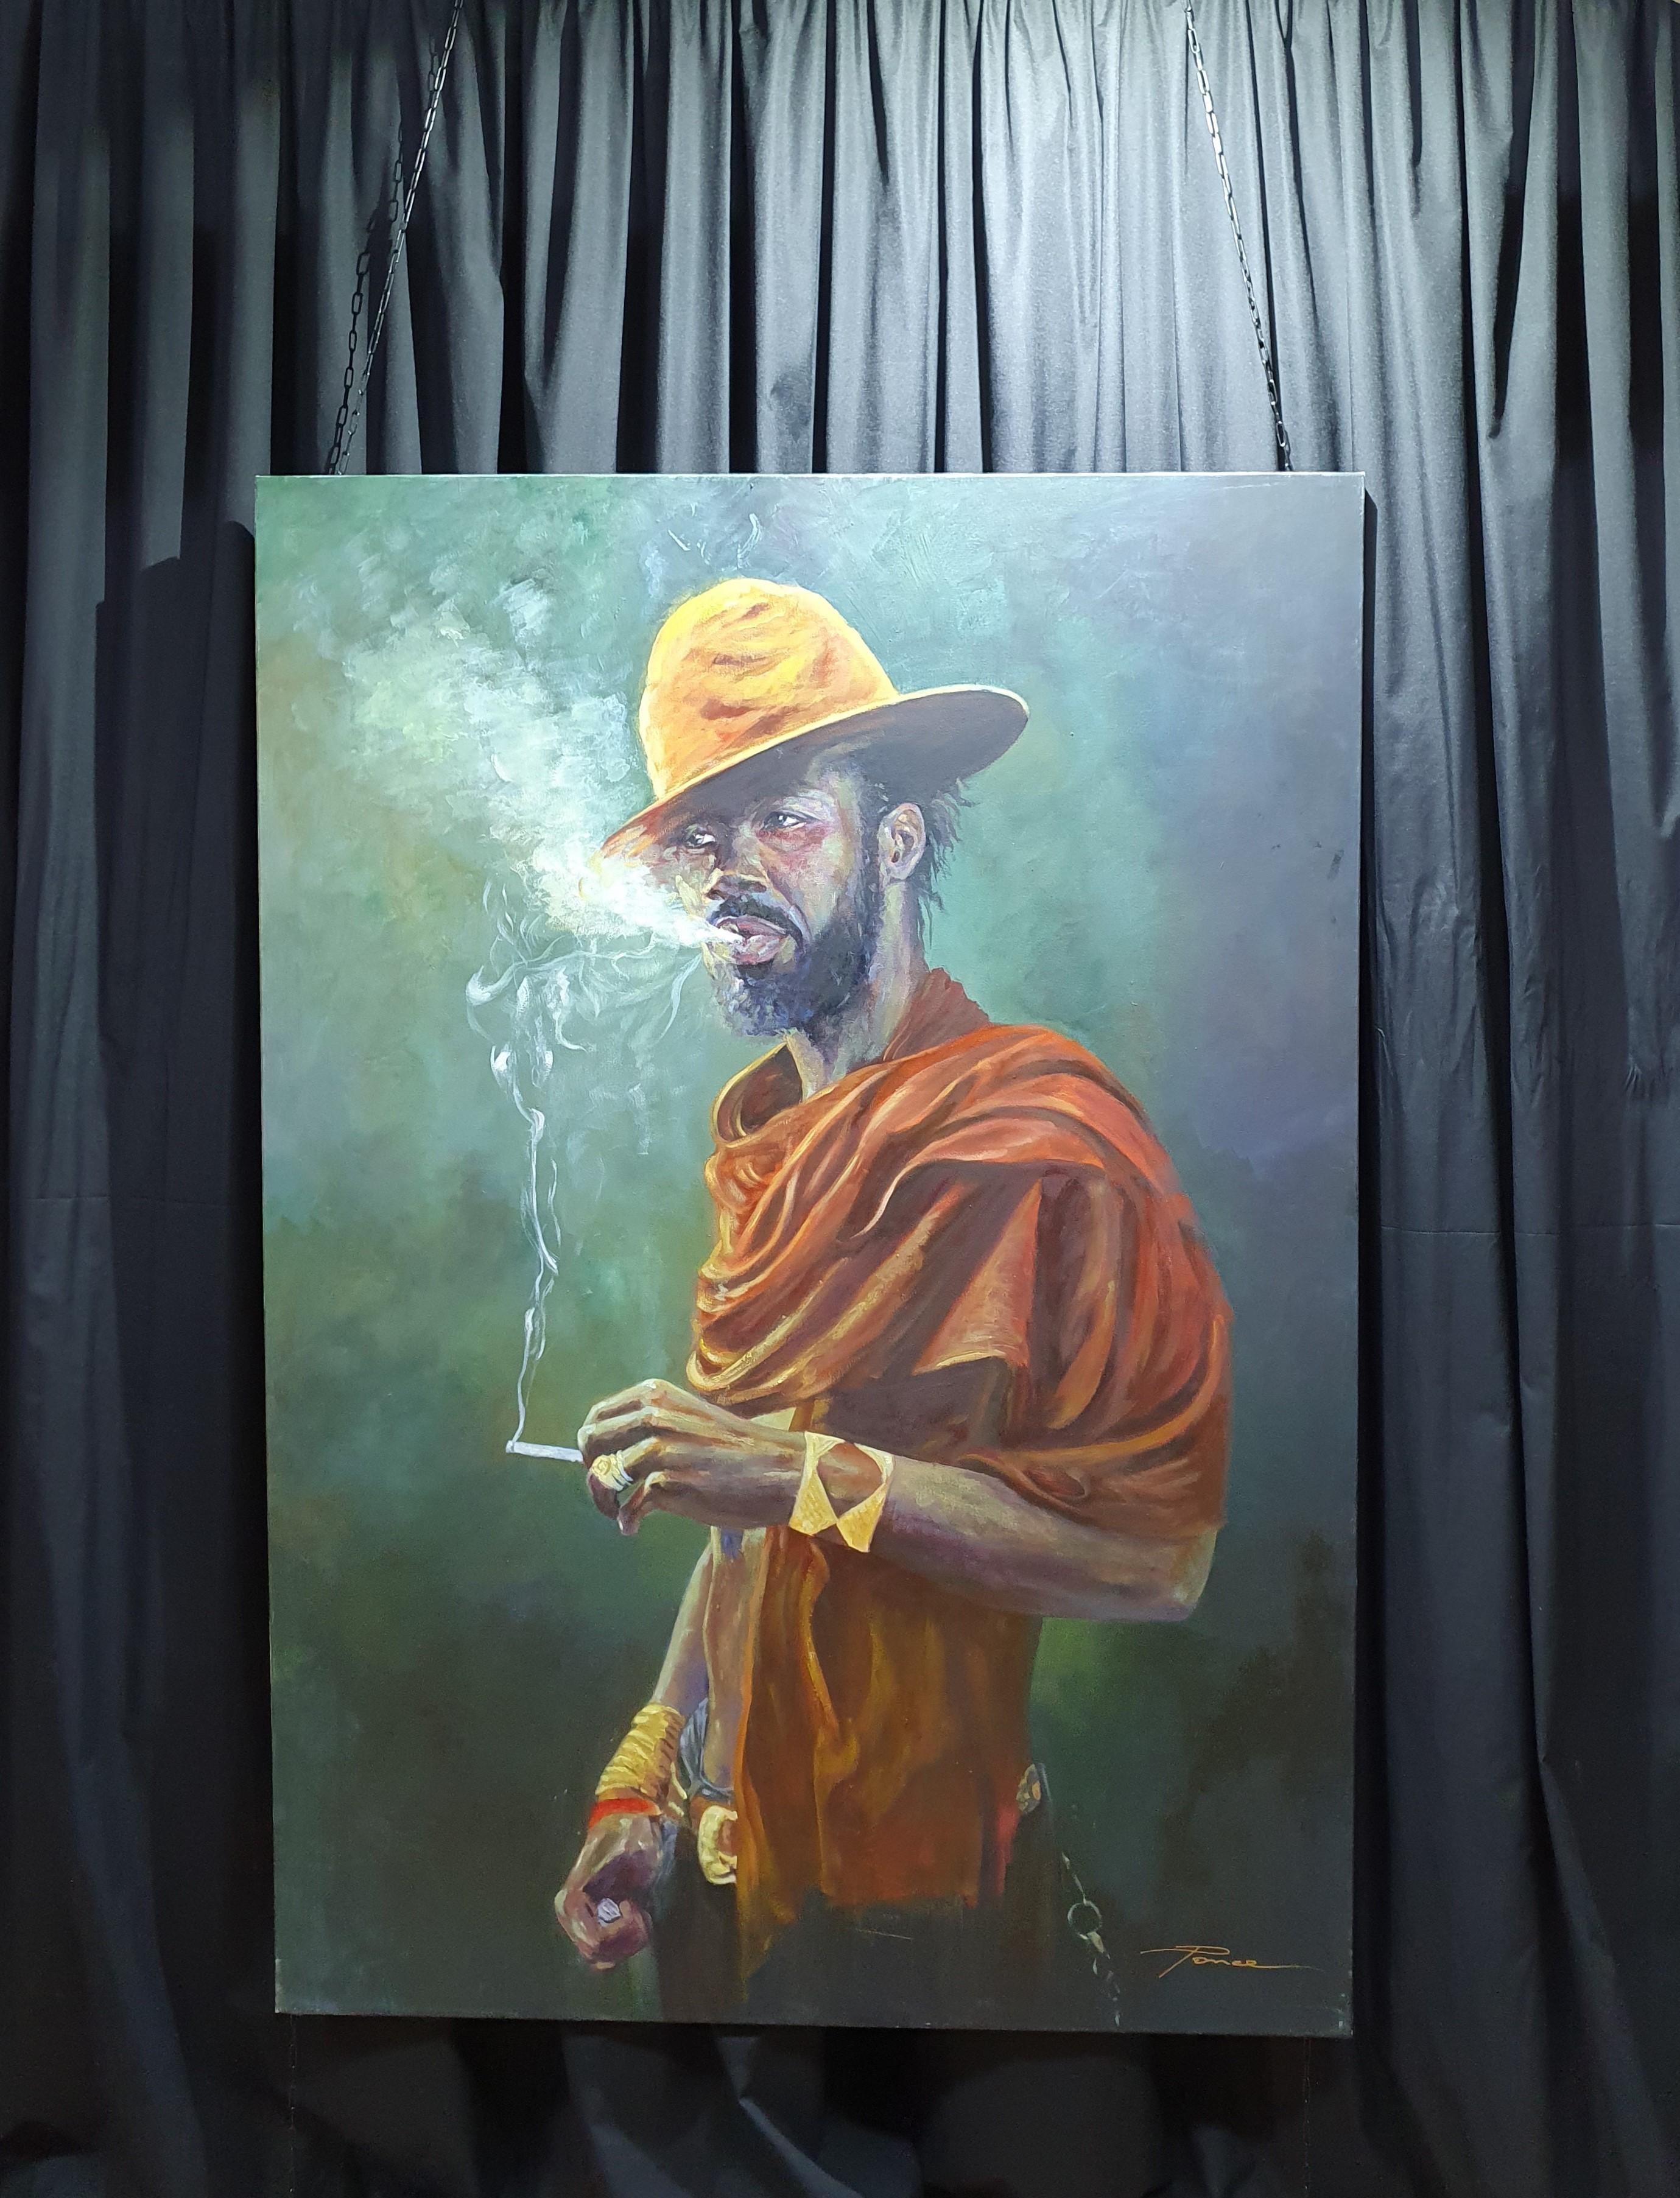 Fumador - Painting by José Luis Pagador Ponce